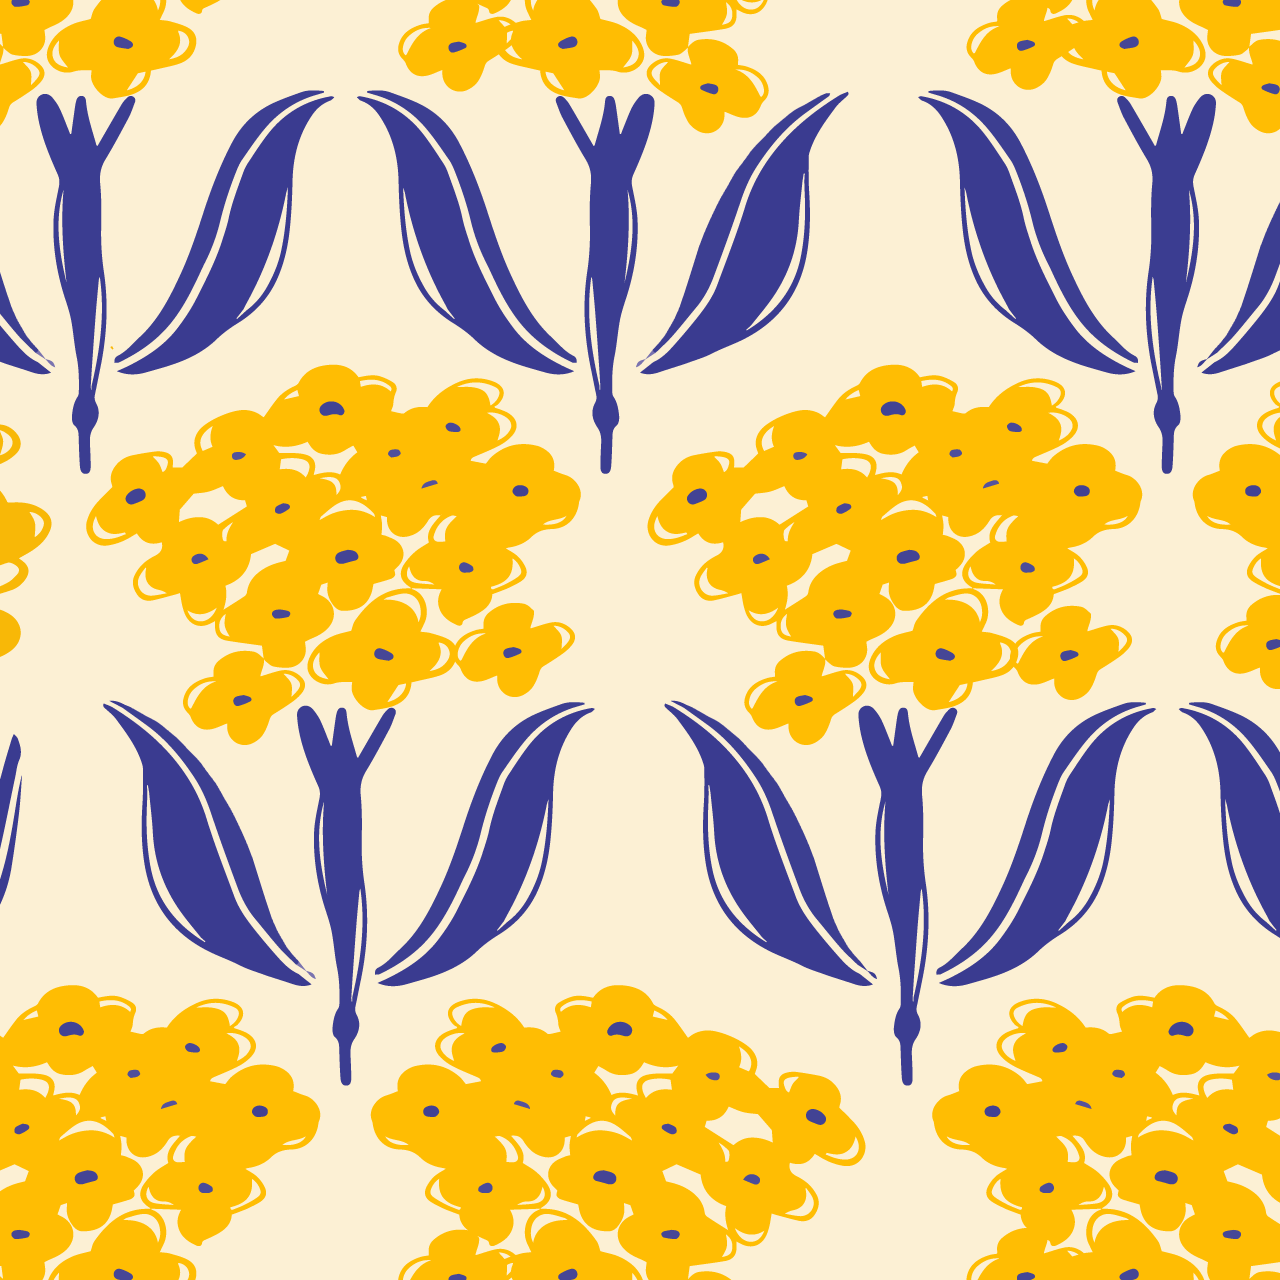 クリーム色の背景に黄色い花のパターン